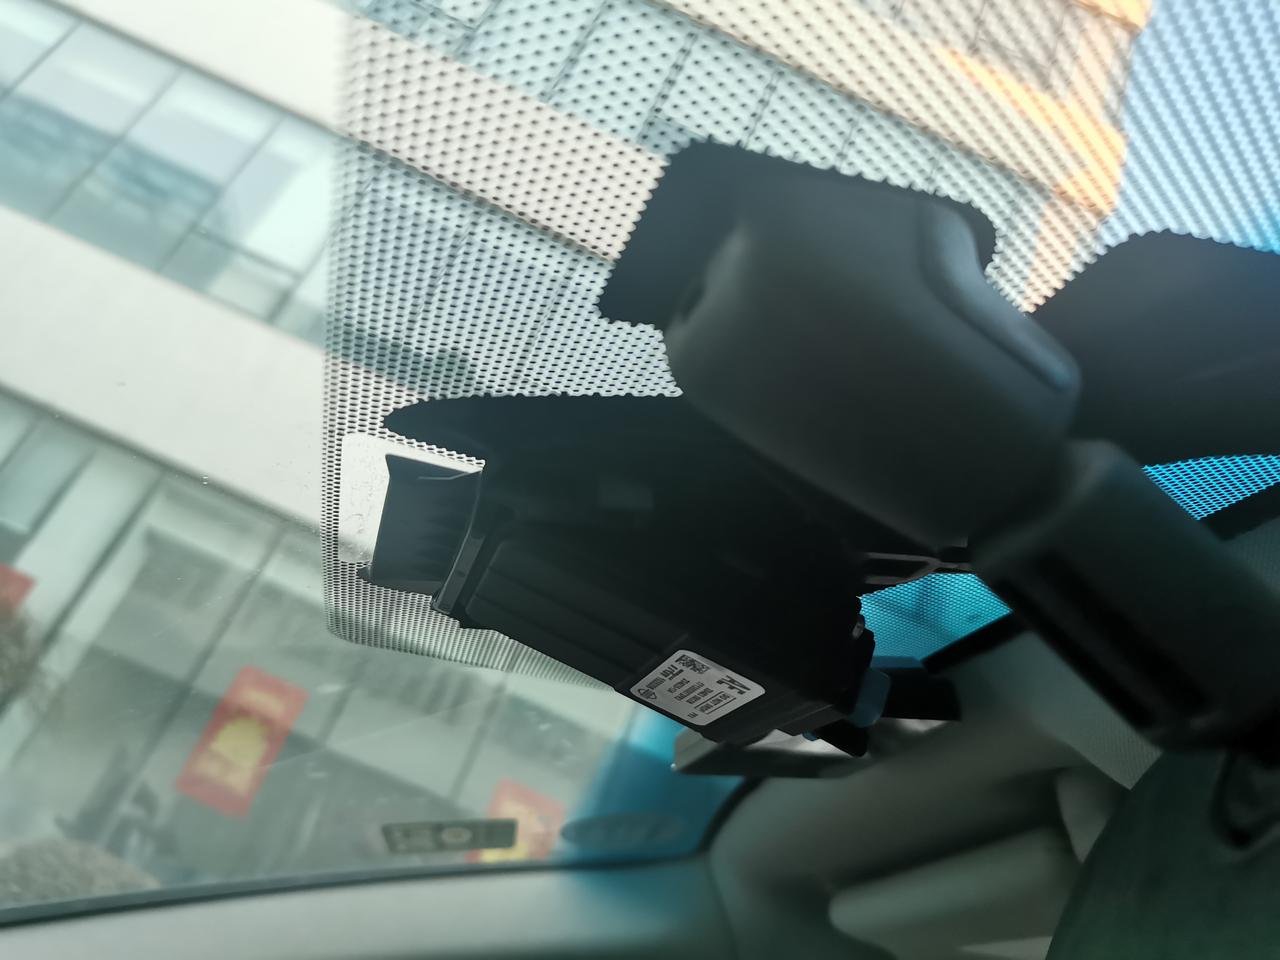 2017款的天籁内视镜旁边的黑色盒子是行车记录仪吗